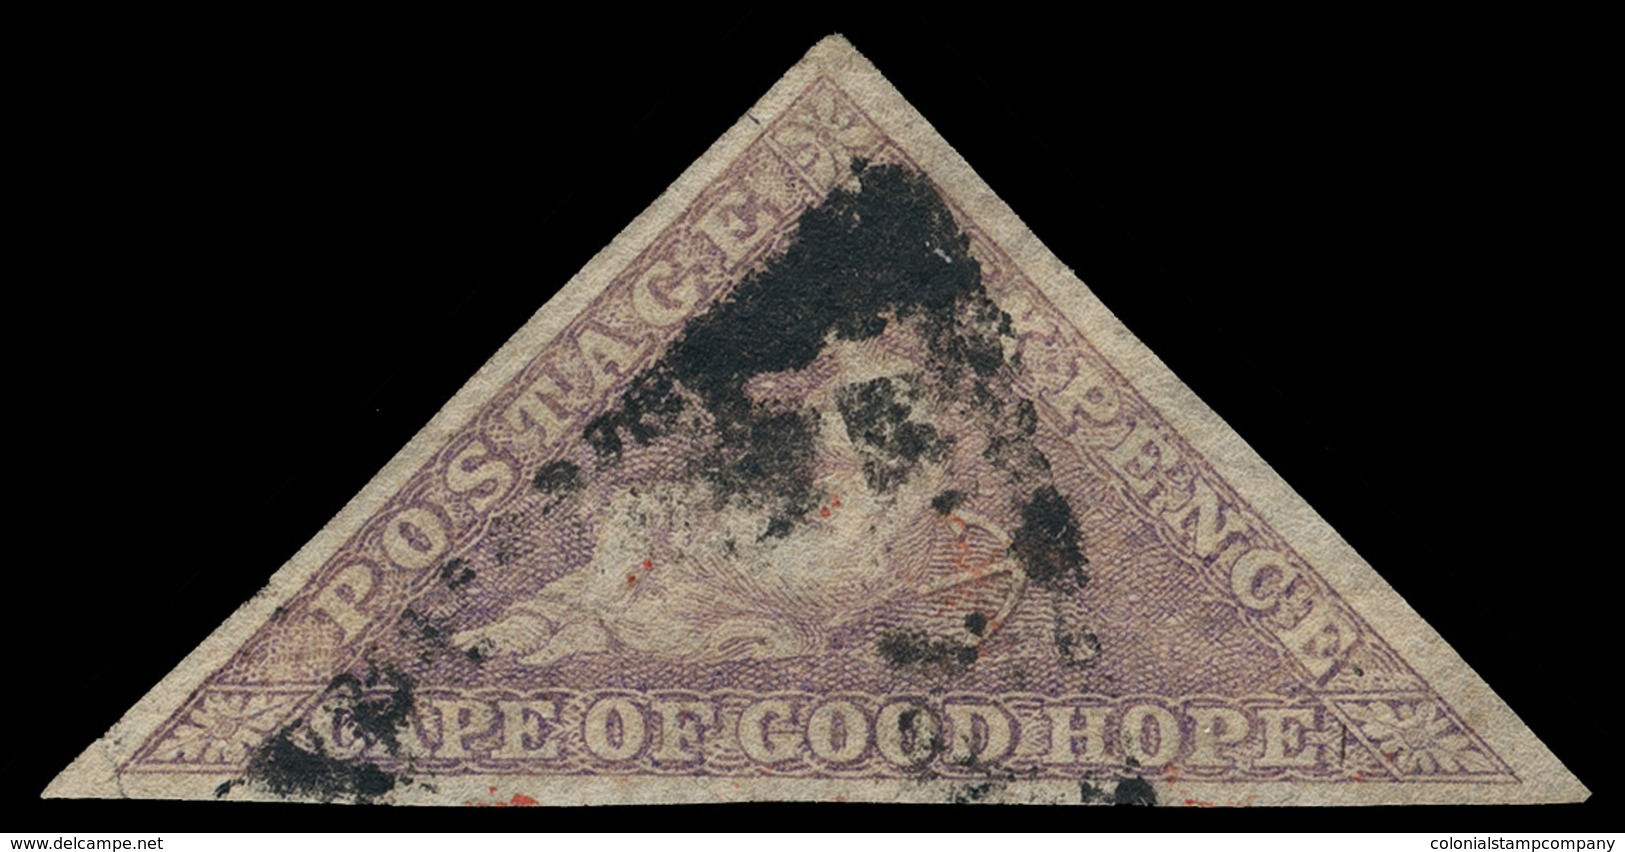 O Cape Of Good Hope - Lot No.526 - Capo Di Buona Speranza (1853-1904)